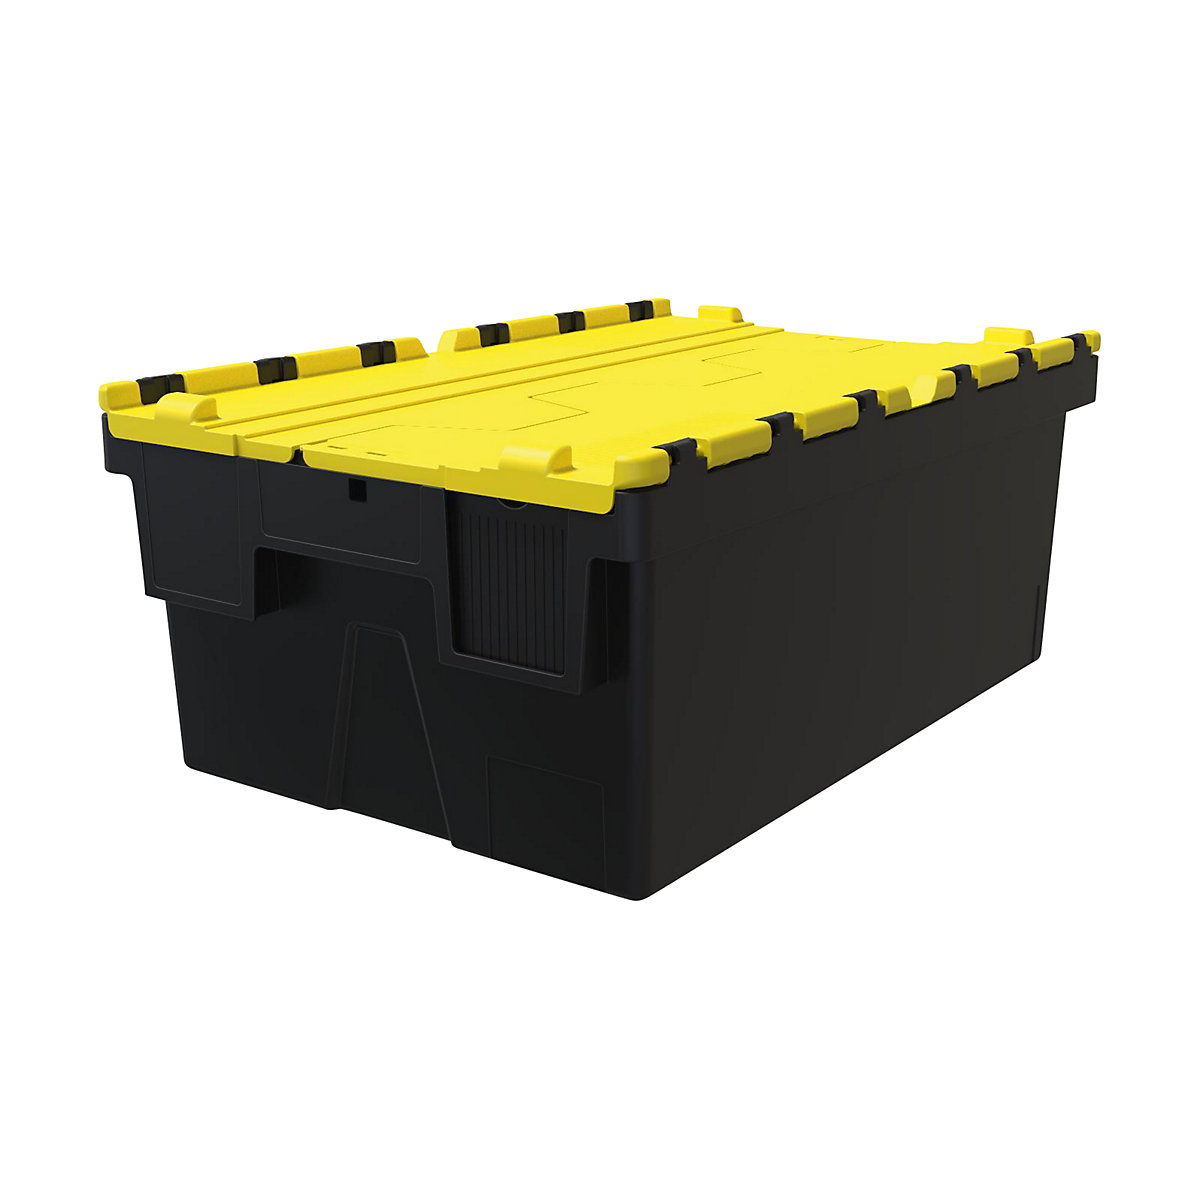 Többször használható rakásolható tároló, h x szé x ma 600 x 400 x 250 mm, cs. e. 5 db, fekete színben, sárga fedéllel